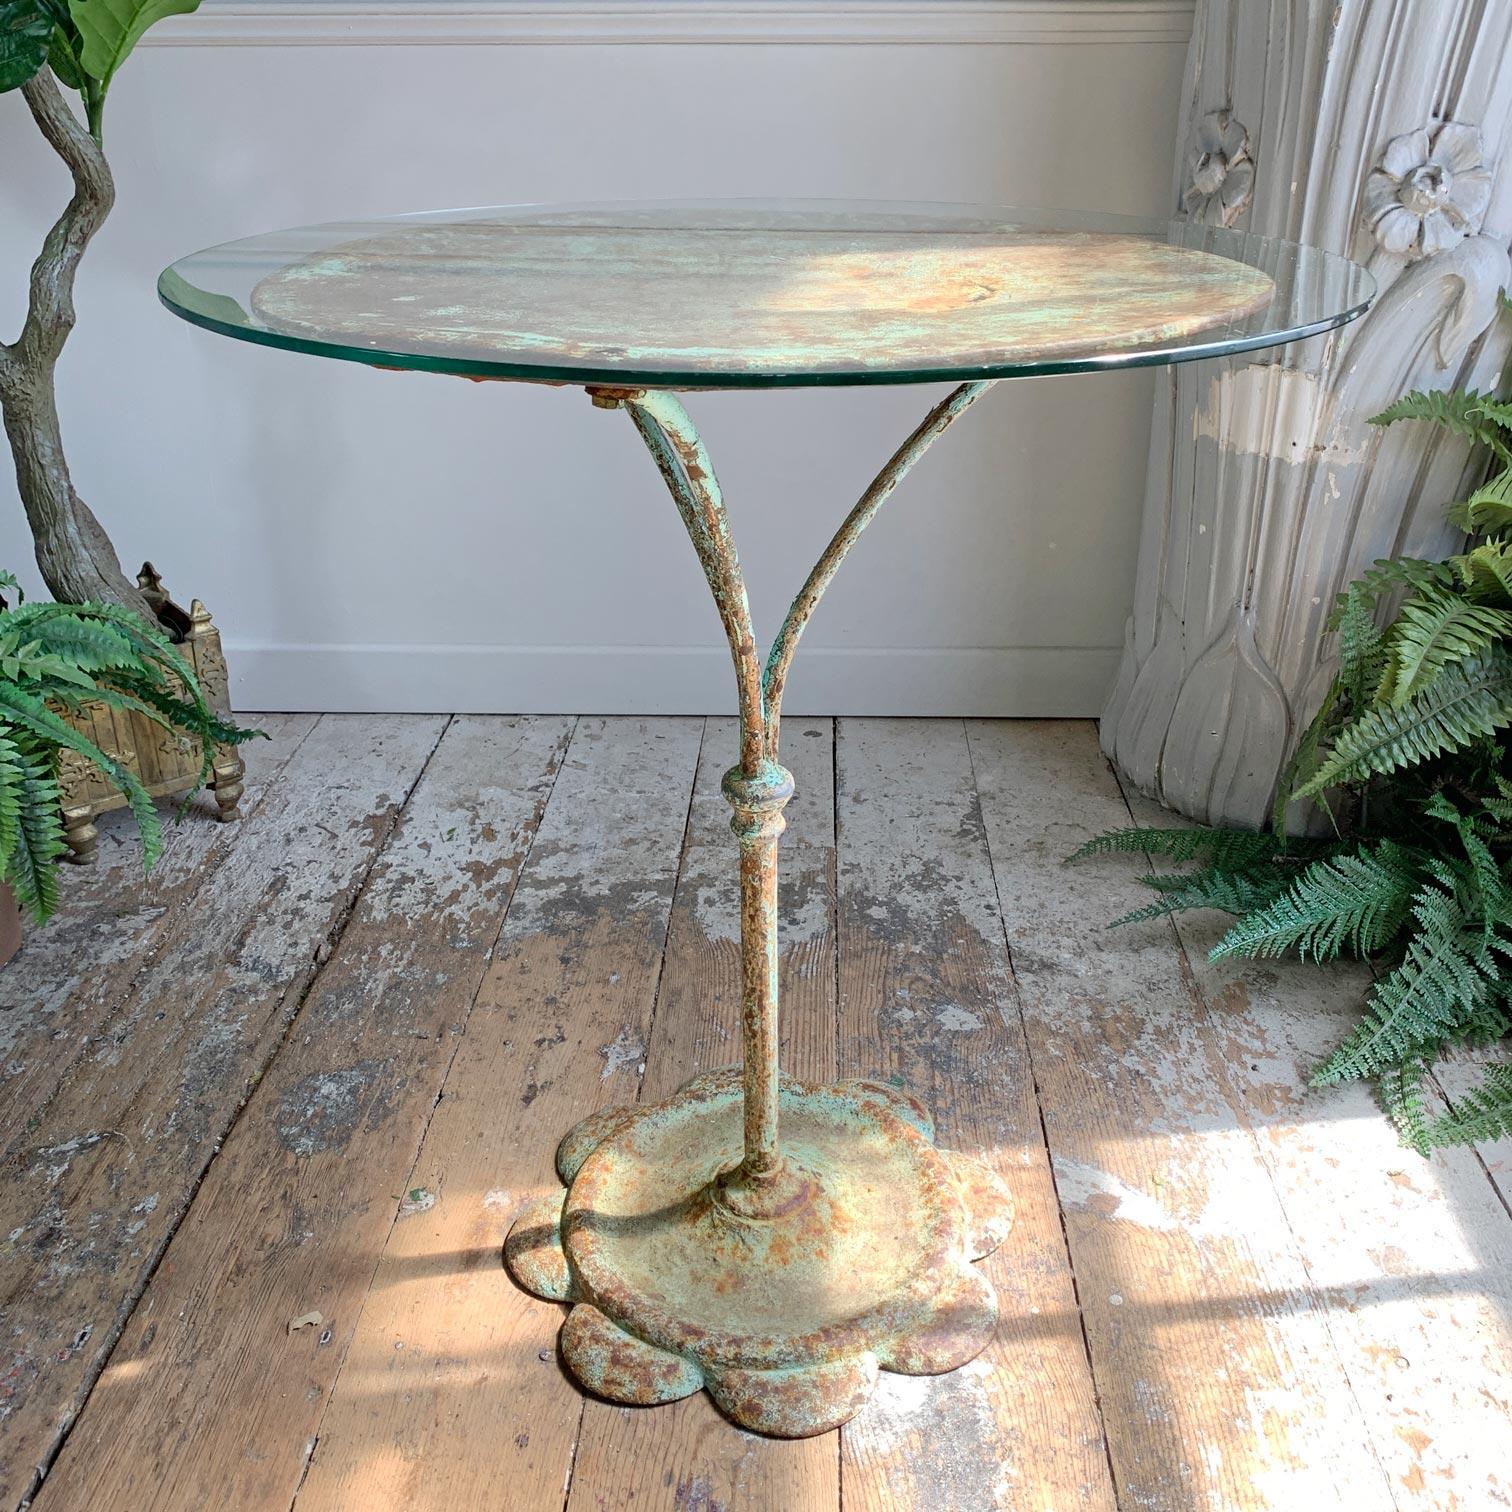 Wunderschöner französischer Bistro-/Café-Tisch aus Eisen aus dem frühen 20. Jahrhundert mit türkisfarbener Farbe und alter Patina. Die Platte hat ein paar kleine Stellen, an denen die Zeit und der Gebrauch Spuren hinterlassen haben, ist aber immer